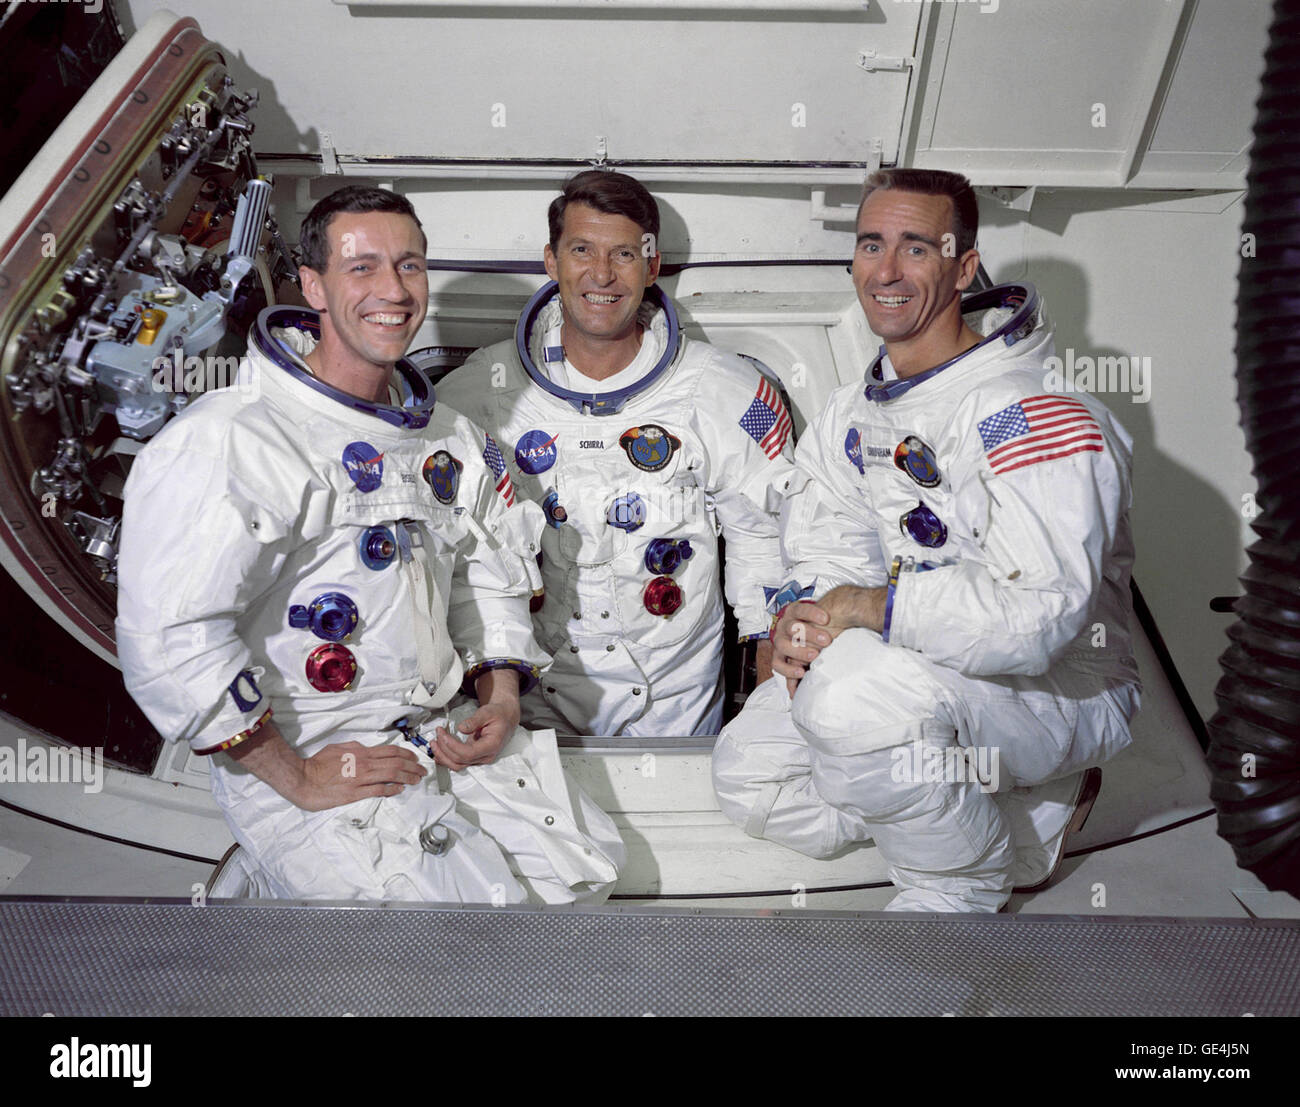 Il primo equipaggio del primo Apollo missione spaziale da sinistra a destra sono: il pilota del modulo di comando, Don F. Eisele, Commander, Walter M. Schirra Jr e modulo lunare pilota, Walter Cunningham. La fotografia è stata presa all'interno della camera bianca che è attaccato all'equipaggio braccio di accesso. Da qui gli astronauti di ingresso e di uscita del veicolo spaziale. Il comandante Wally Schirra Jr è visto all'interno dell'apertura del modulo di comando principale del portellone. Immagine # : S68-33744 Data: 22 Maggio 1968 Foto Stock